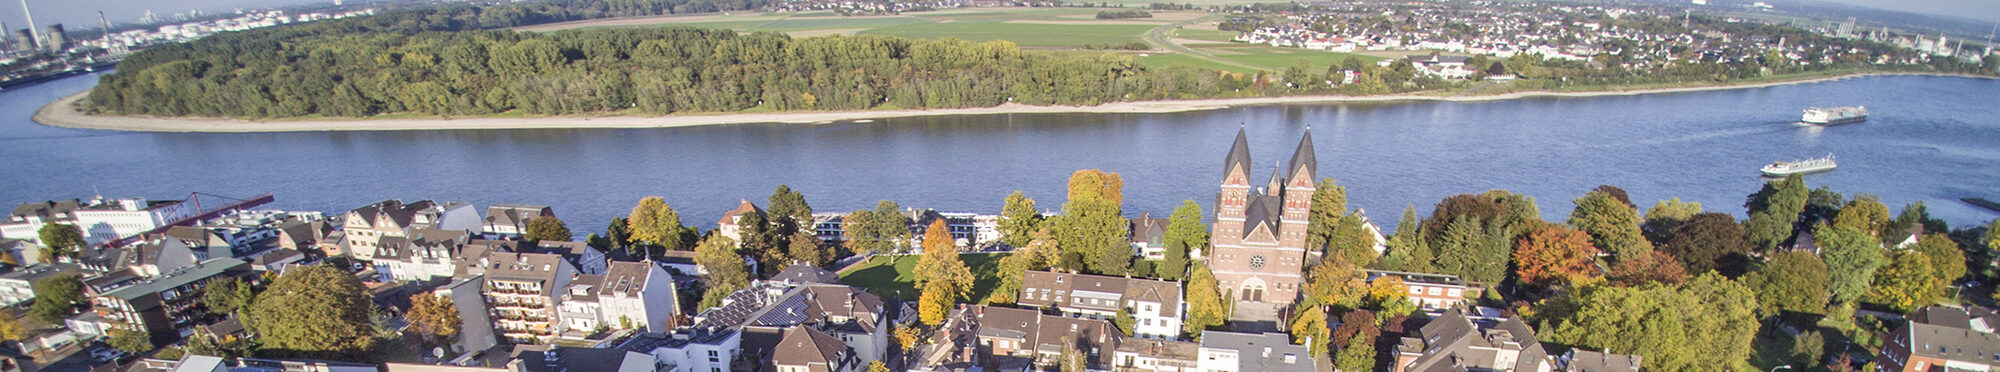 Luftaufnahme vom Stadtzentrum Wesseling mit Neuem Rathaus im Vordergrund